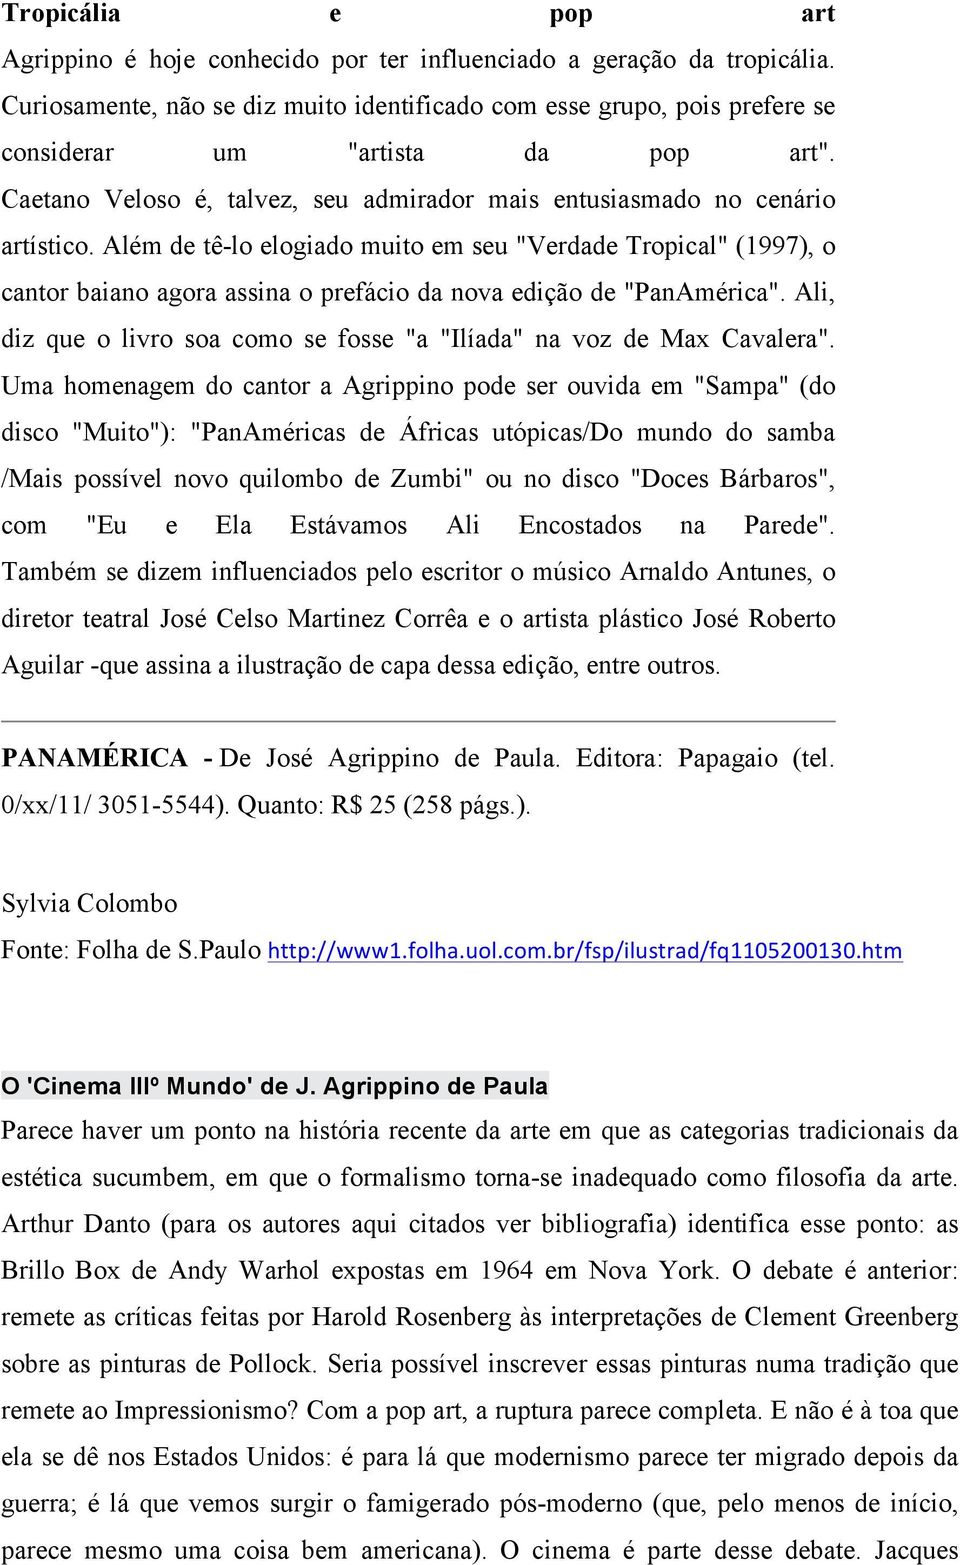 Além de tê-lo elogiado muito em seu "Verdade Tropical" (1997), o cantor baiano agora assina o prefácio da nova edição de "PanAmérica".